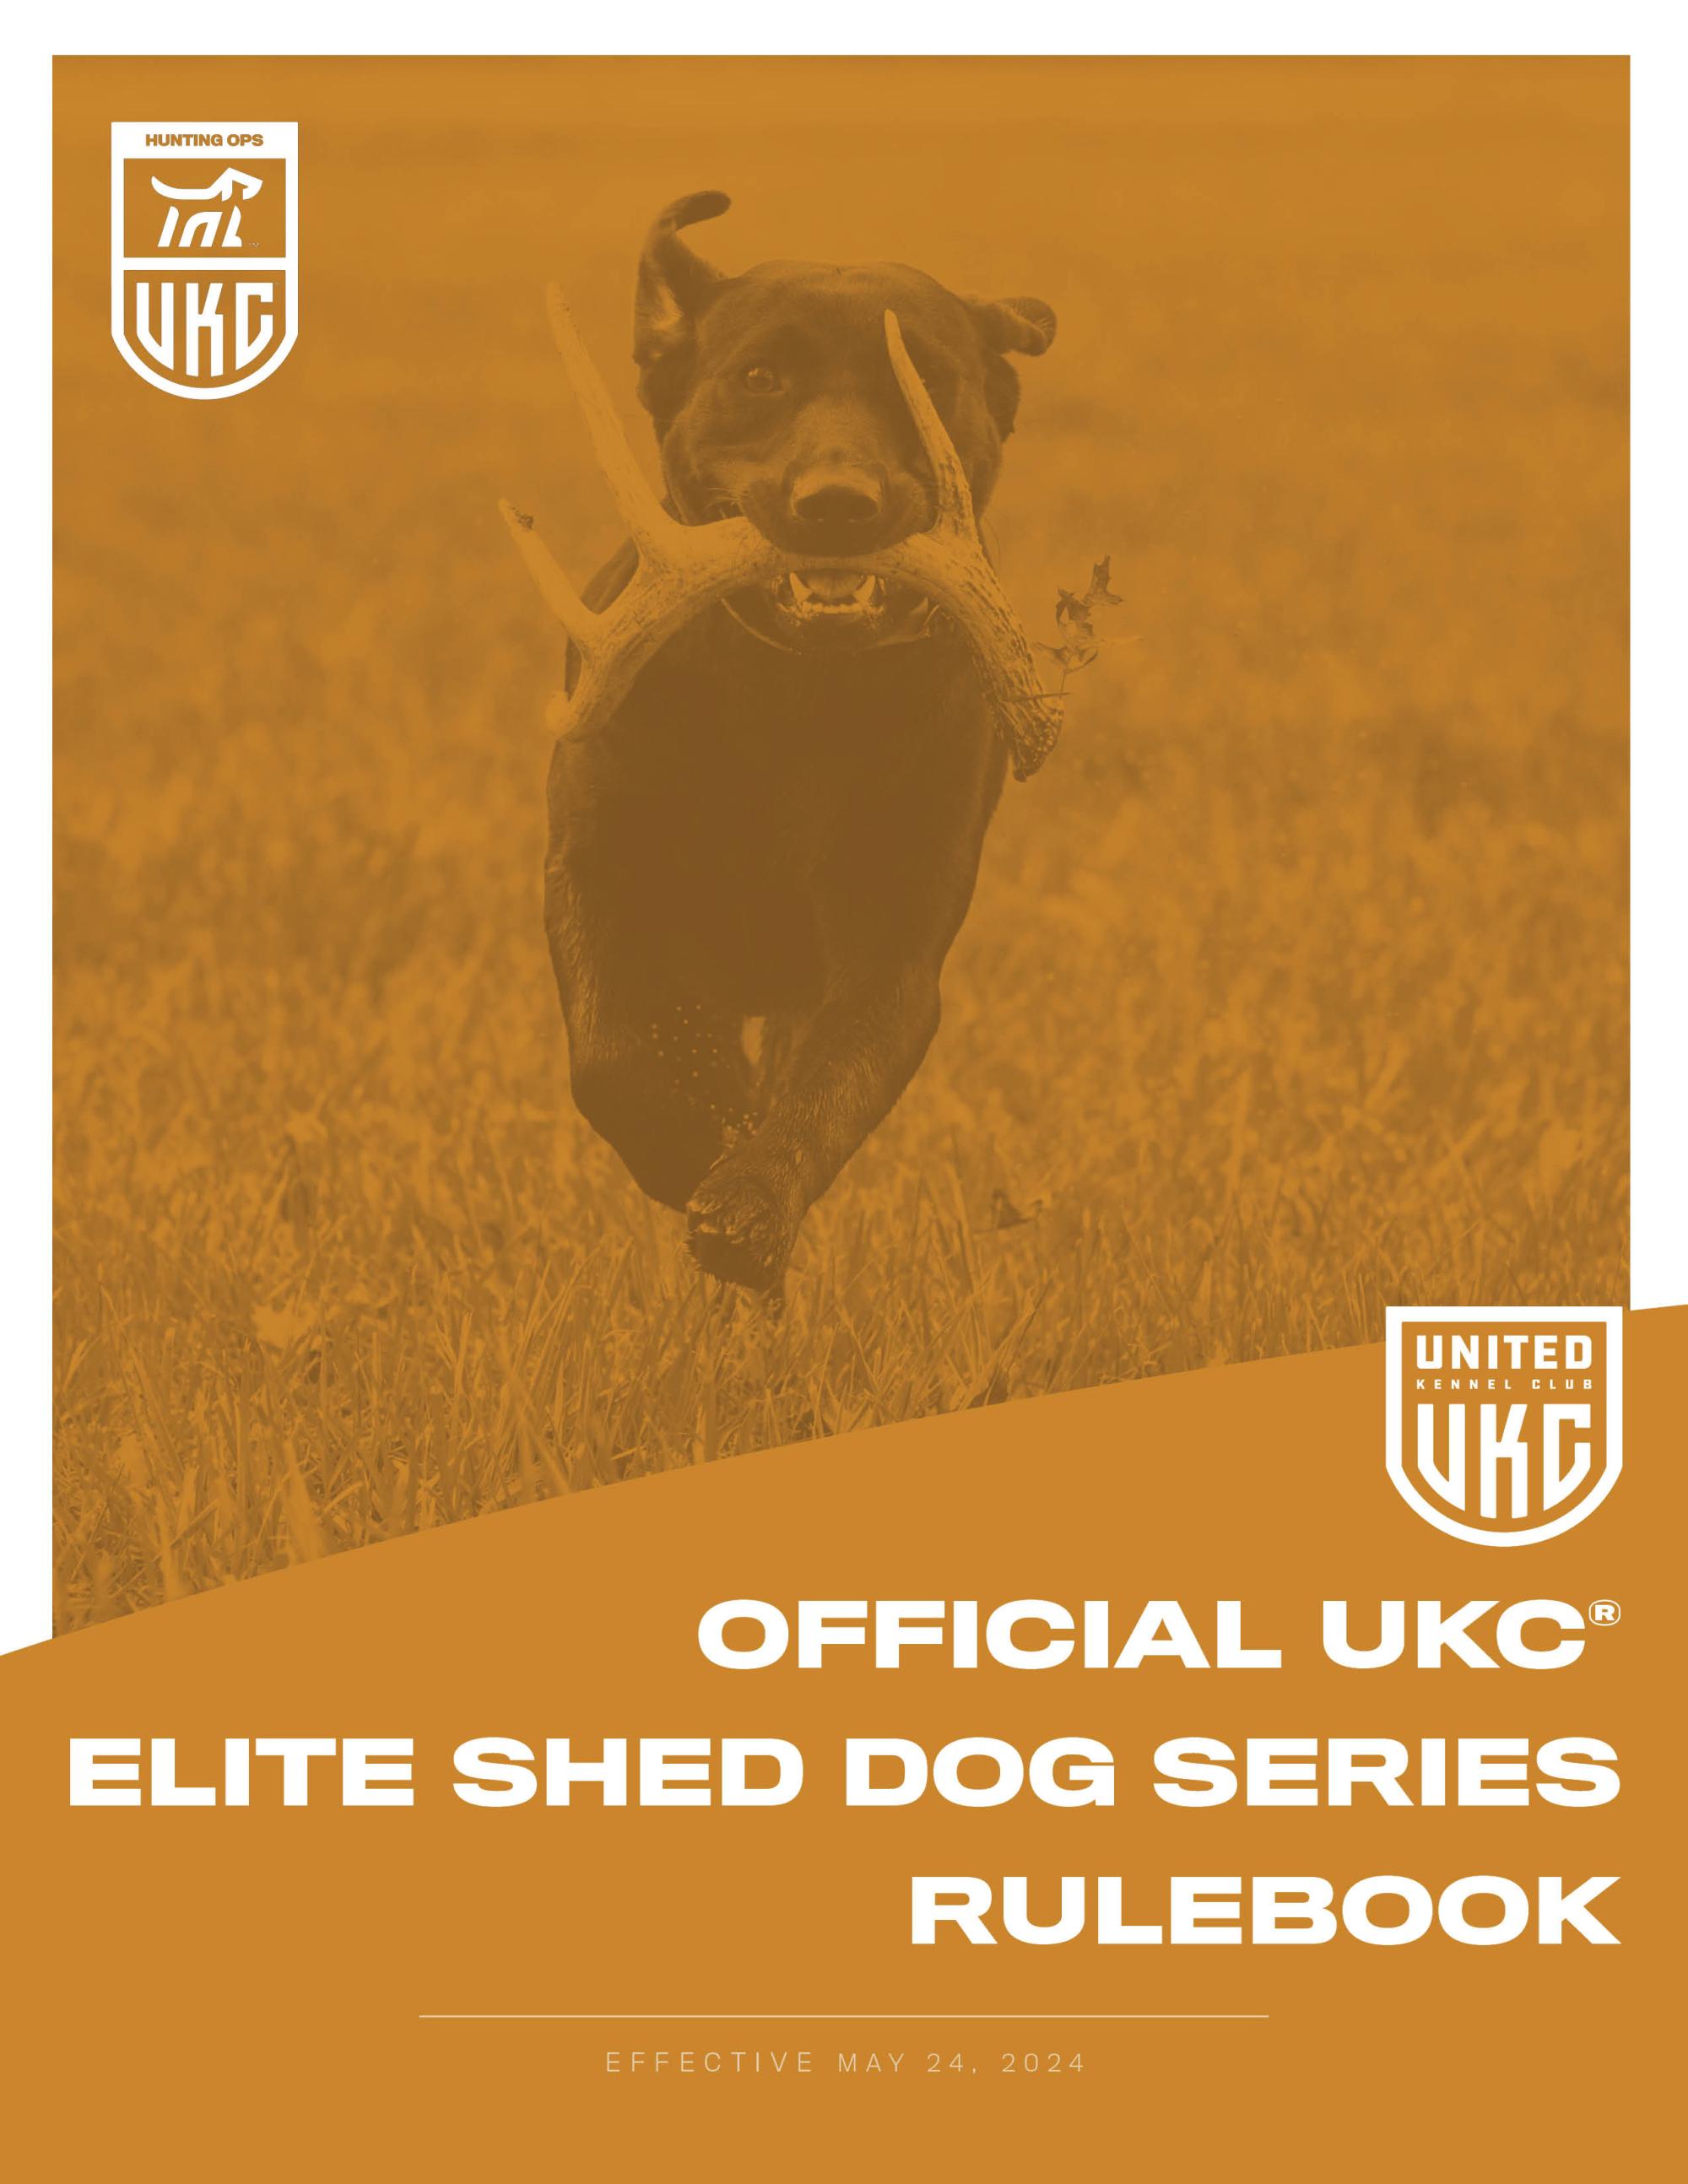 UKC Elite Shed Dog Rulebook Cover (JPG)